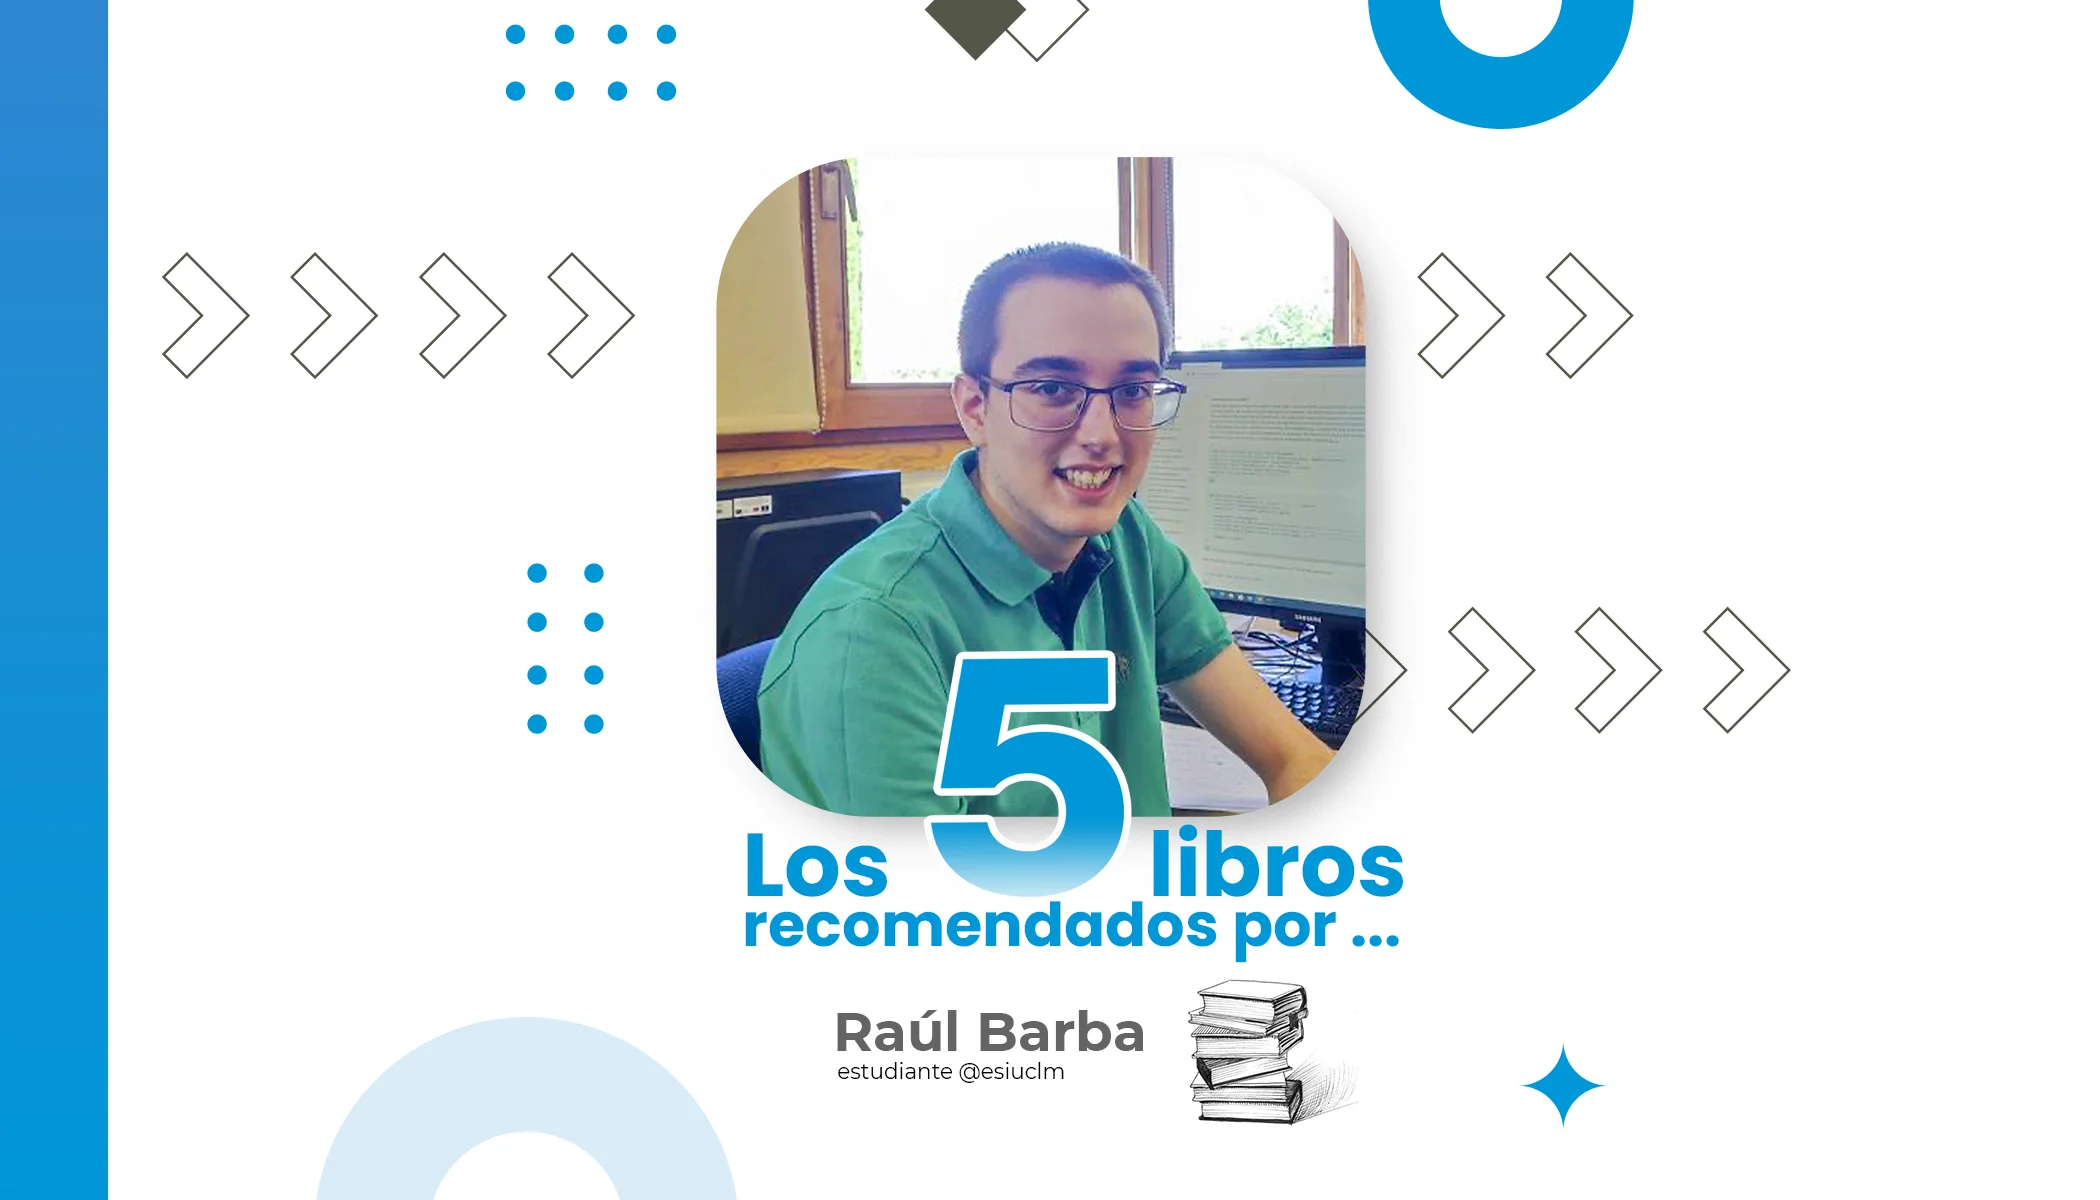 Raúl Barba studente della Scuola Superiore di Informatica